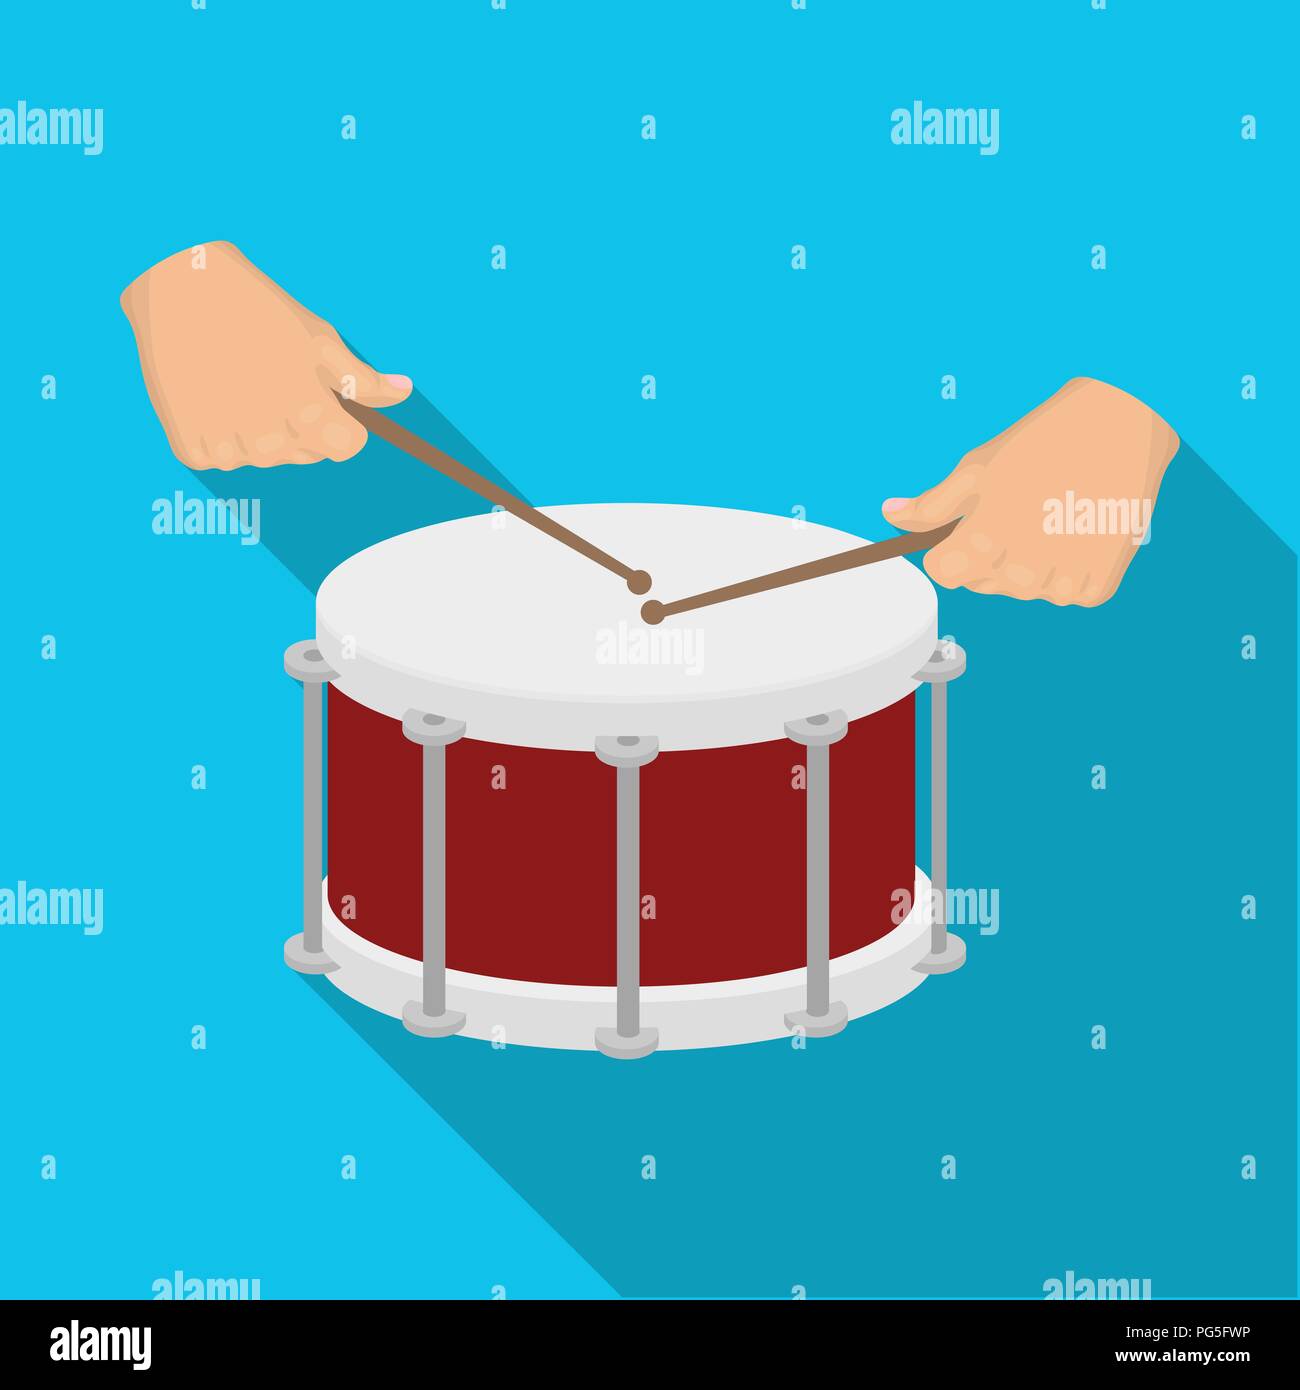 Drum, percussion instrument de musique. Coup de tambour dans l'icône unique  style plat symbole vecteur illustration de stock Image Vectorielle Stock -  Alamy